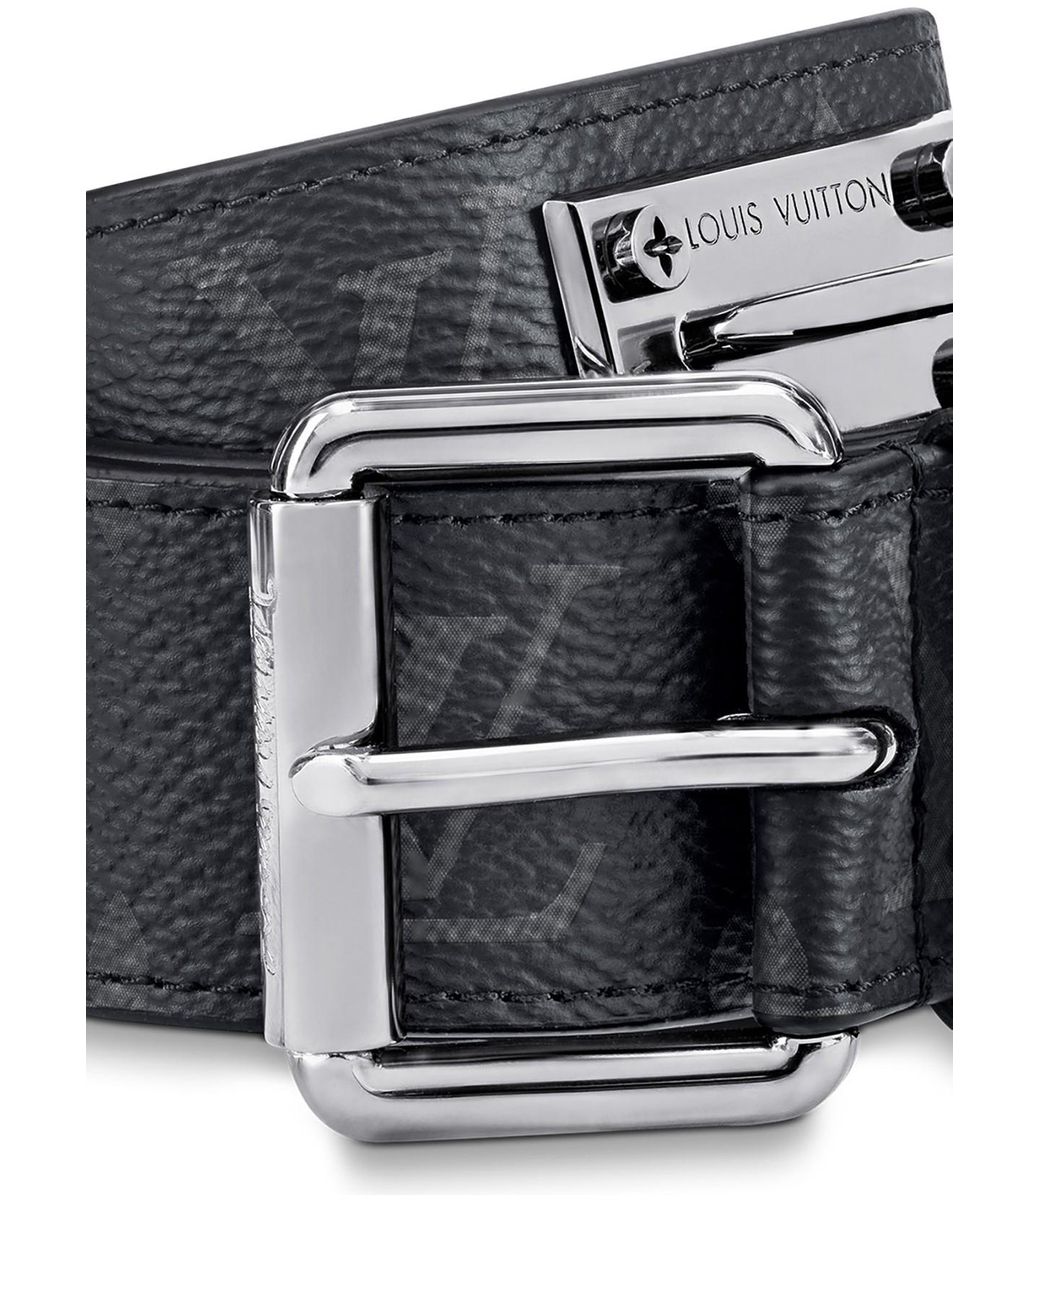 Louis Vuitton Signature Belt Monogram Chains 35MM Brown/Orange in